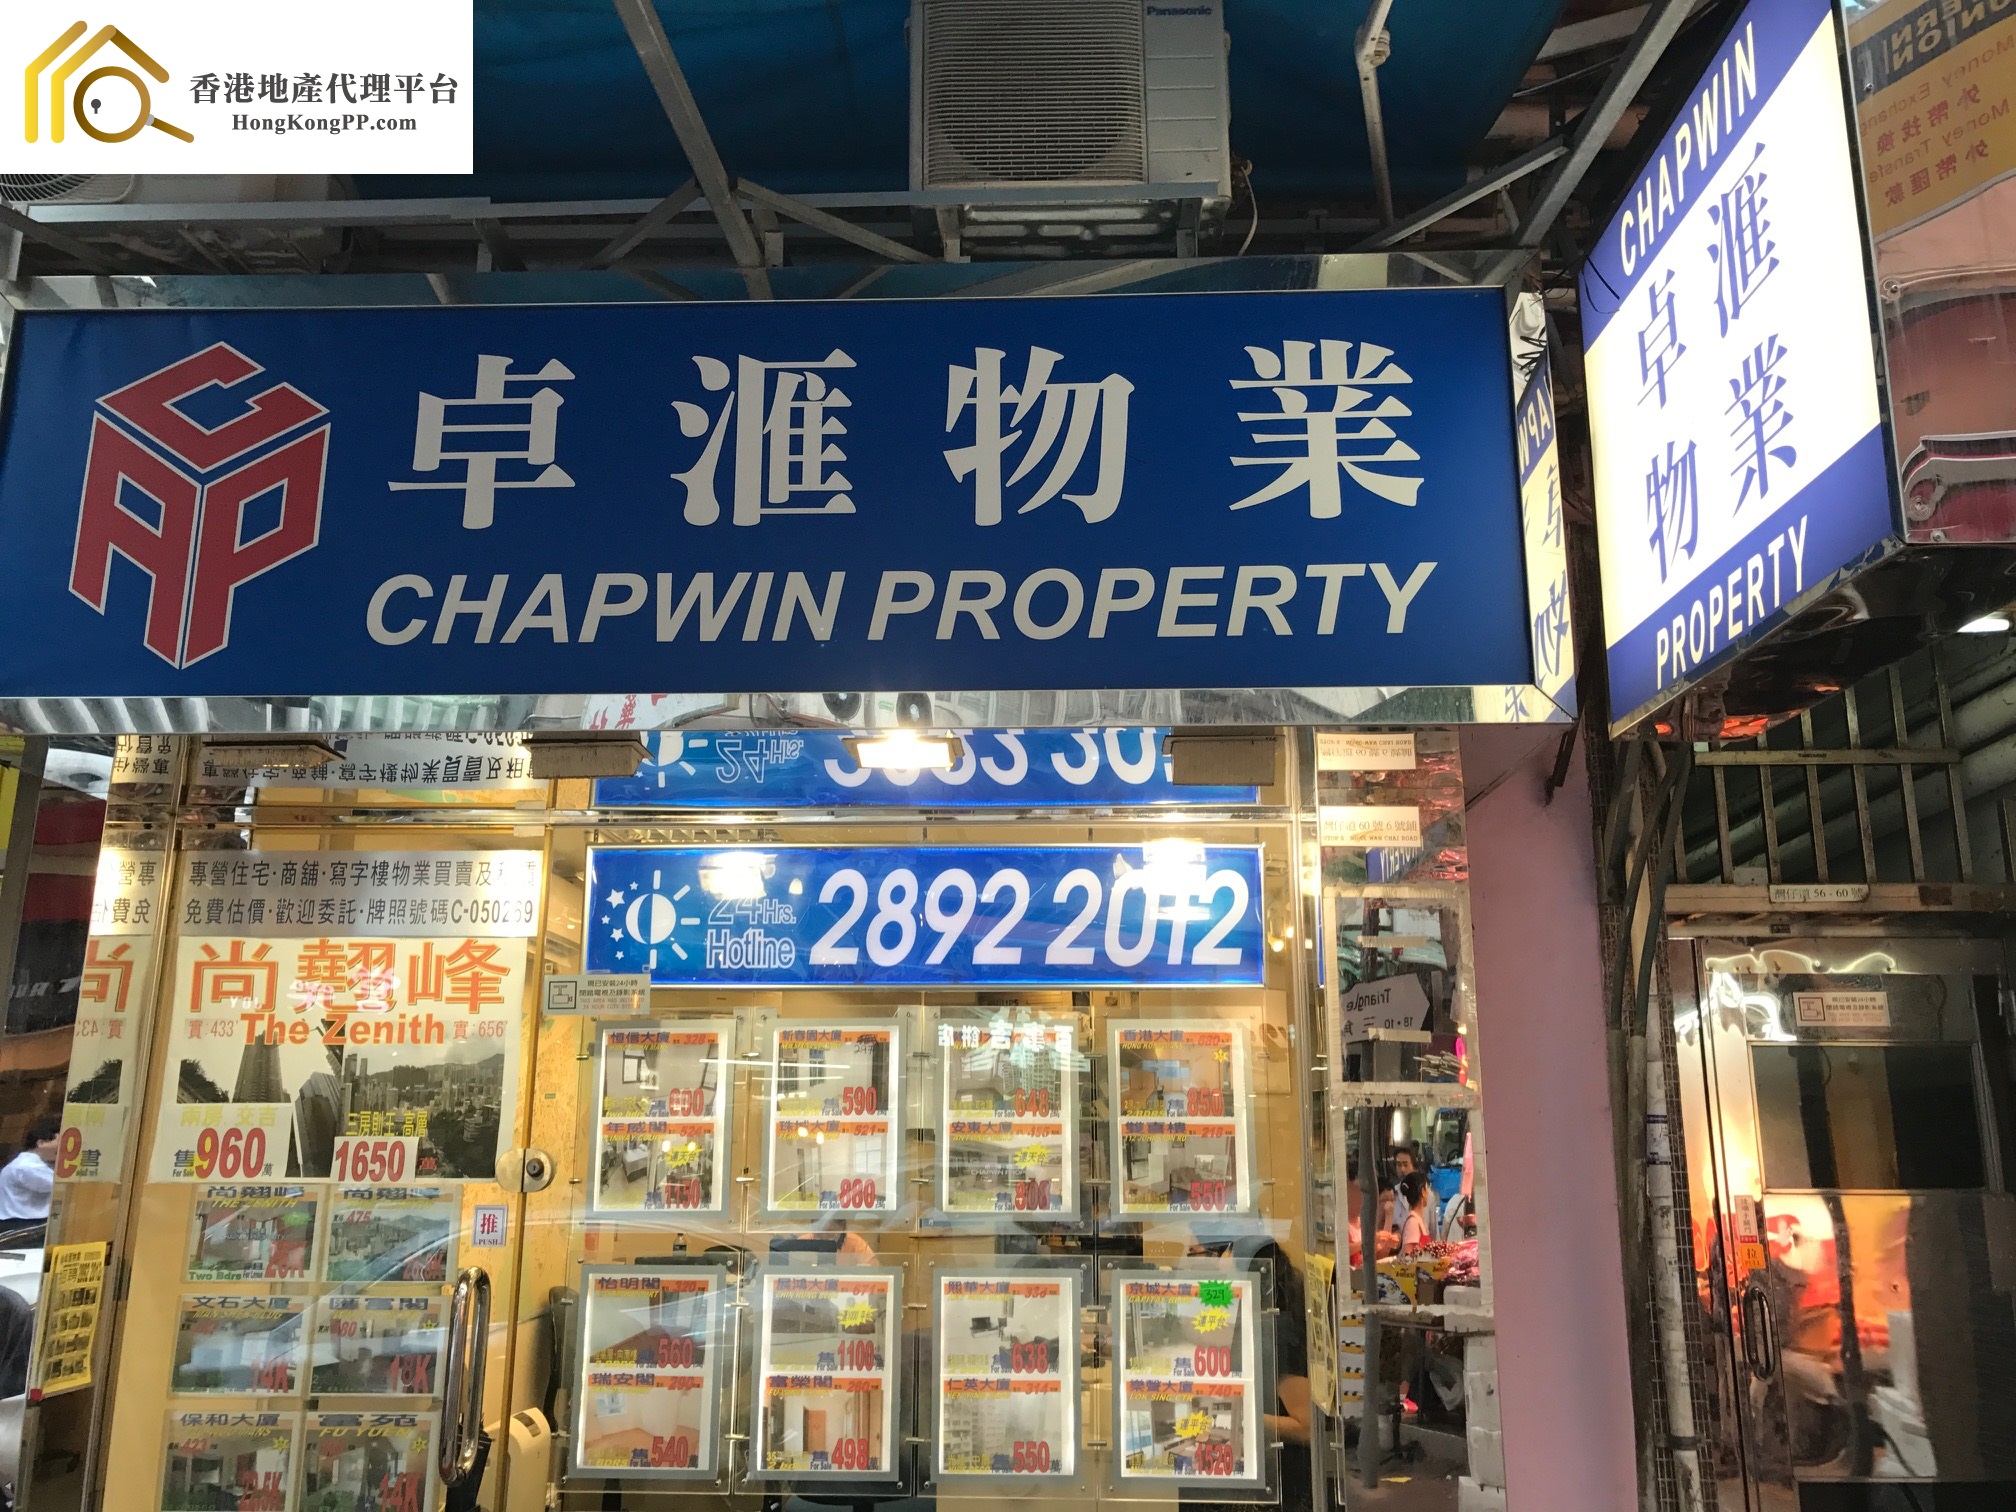 地產代理公司: 卓匯物業 Chapwin Property Agency